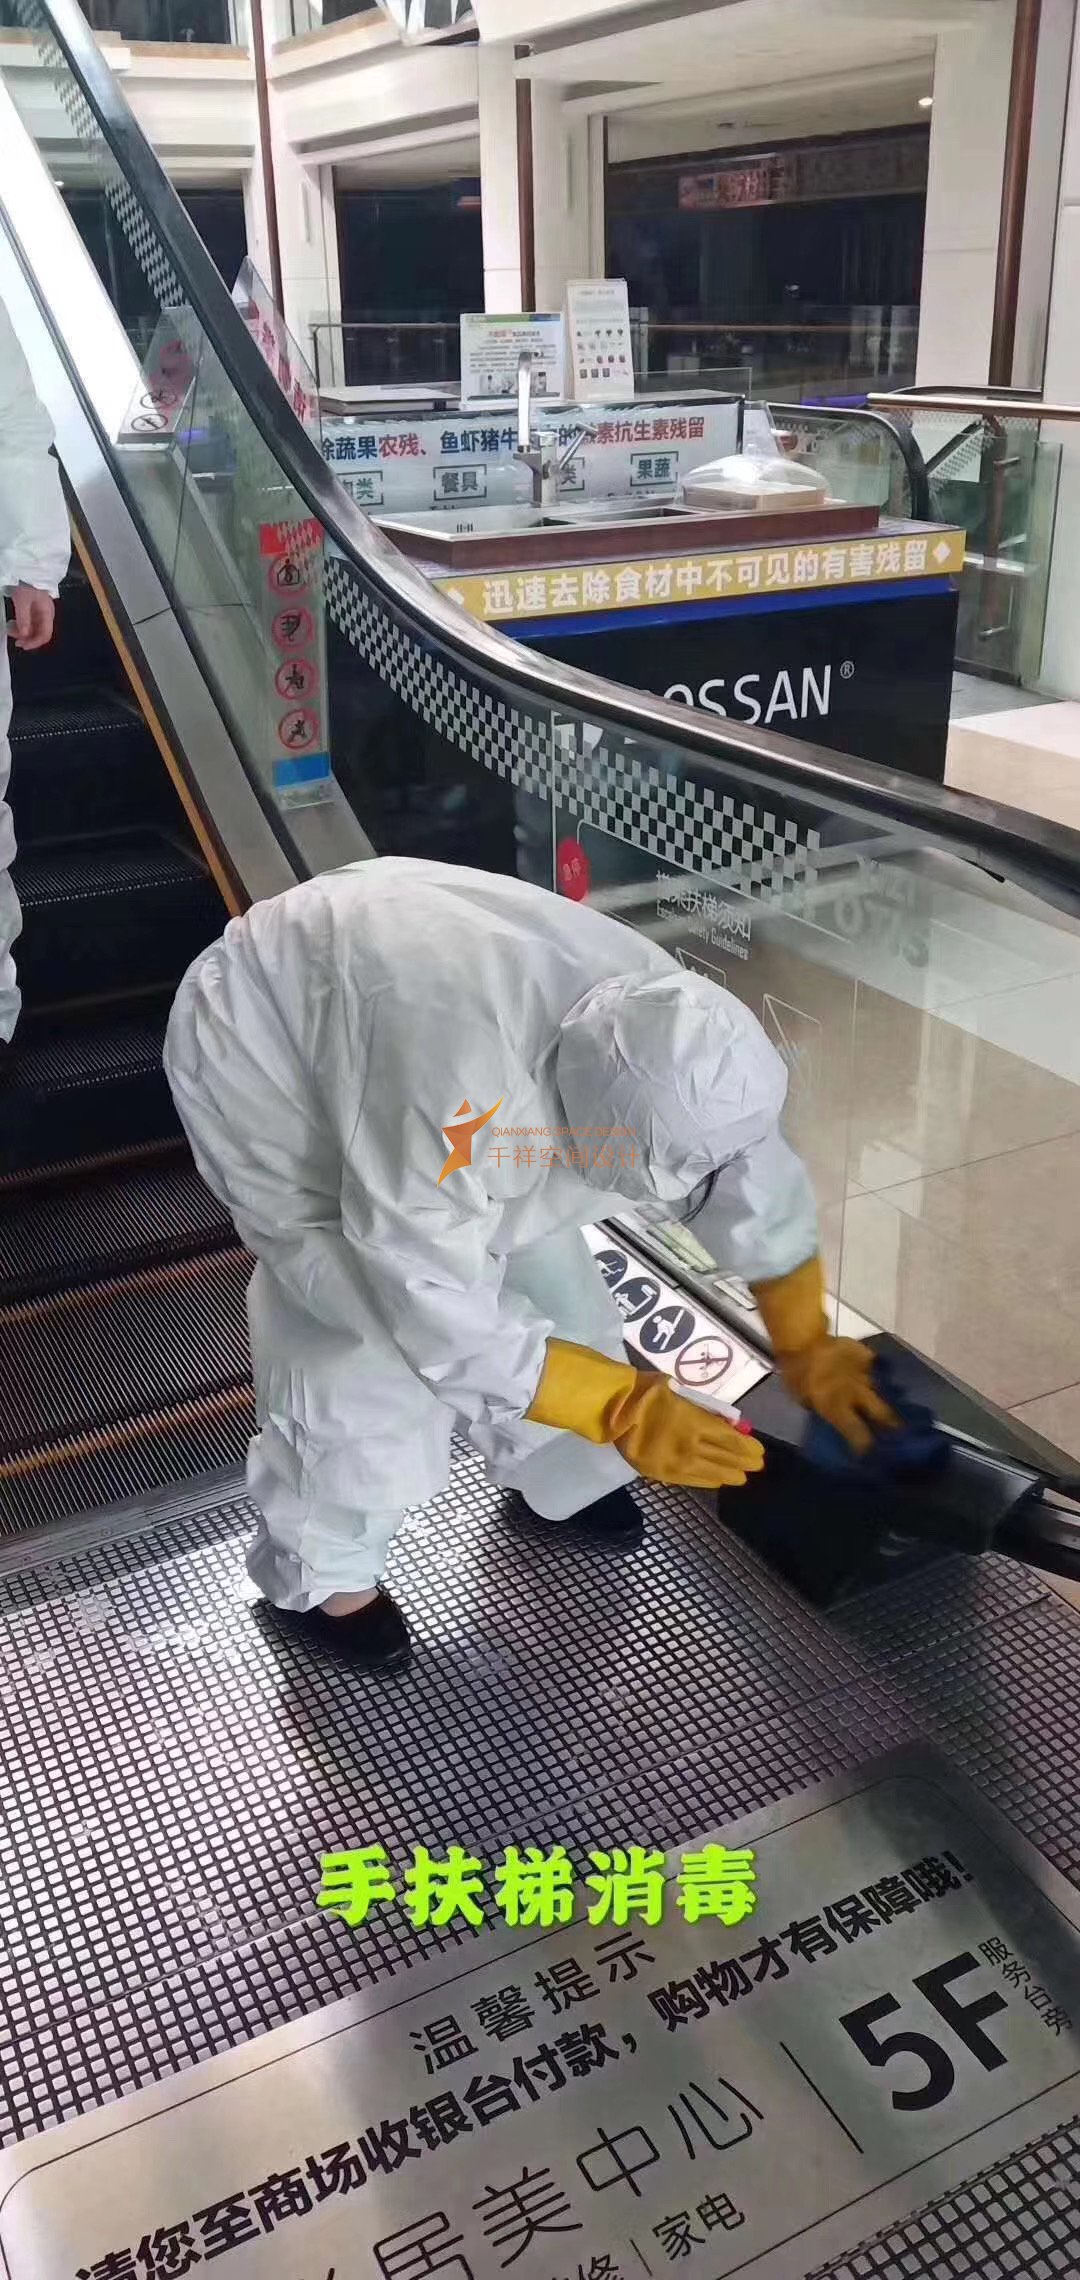 优质商户上海装修公司-天博体育
设计2020年开工大吉-手扶电梯消毒